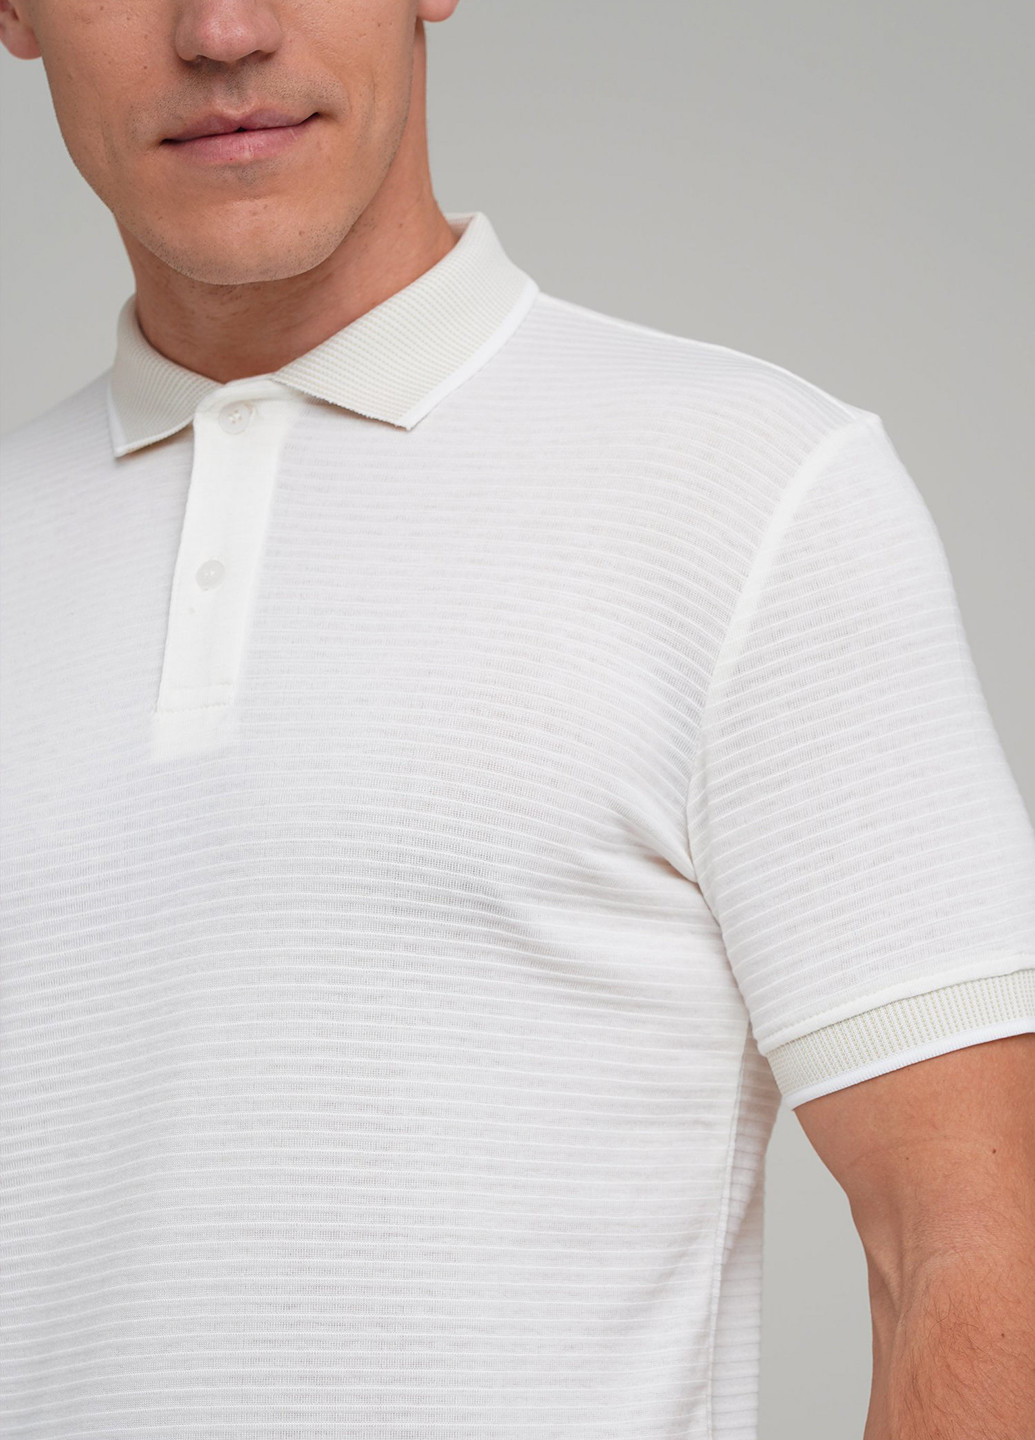 Белая футболка-поло для мужчин Trend Collection в полоску